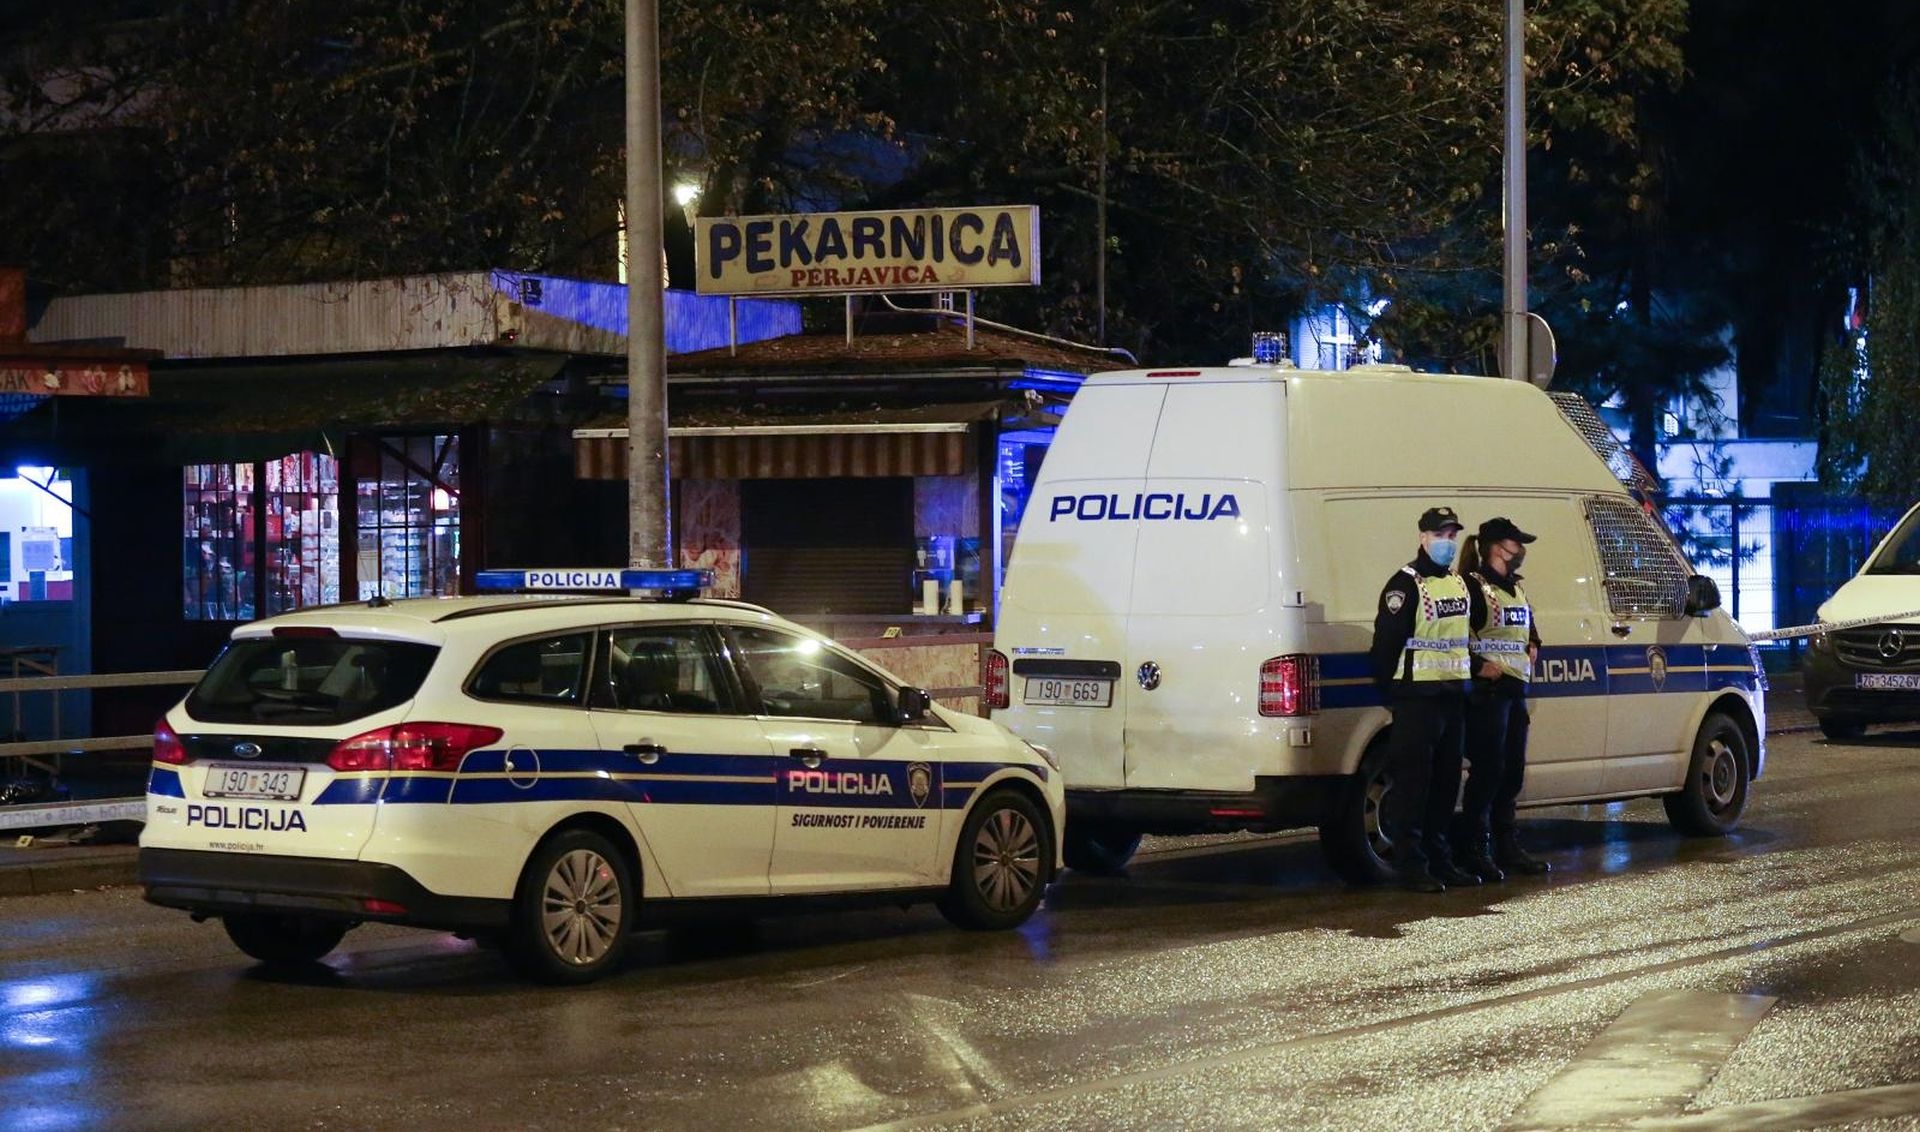 27.10.2020., Zagreb - Oko 22 sata policija je dobila dojavu o tucnjavi nekoliko ljudi u naselju Vrapce. Jedna je osoba mrtva dok je jedna ozlijedjena. Policijski ocevid je u tijeku. Photo: Marko Prpic/PIXSELL